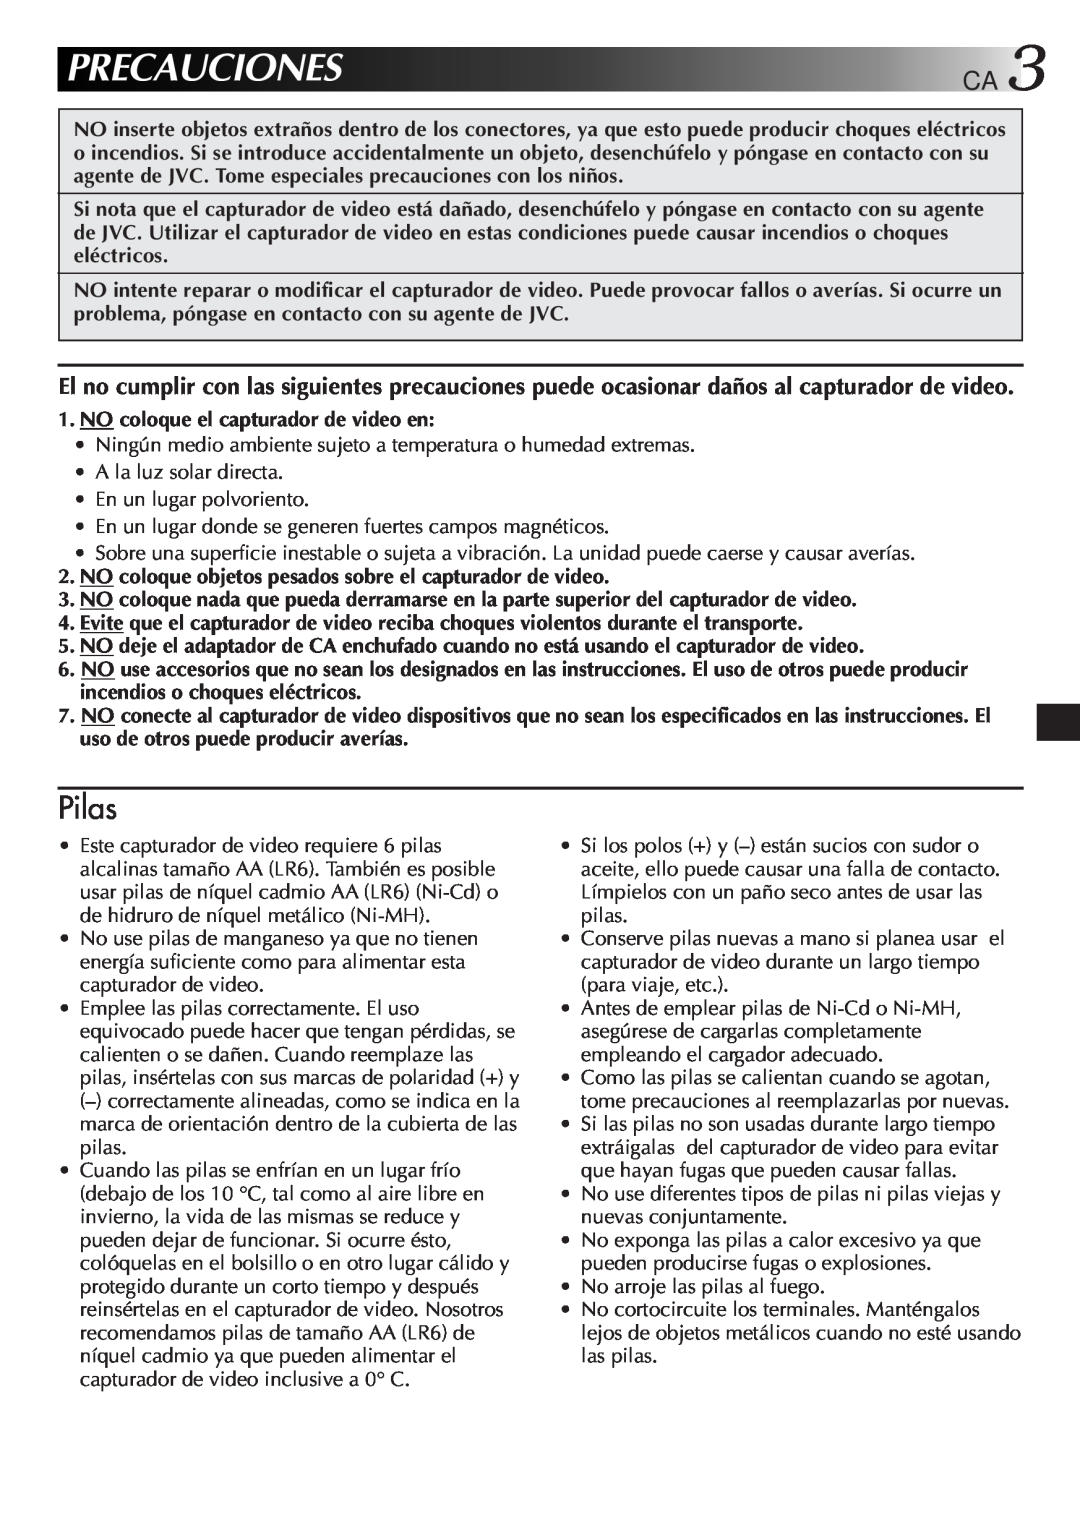 JVC GV-CB3E manual Precauciones Ca, Pilas 